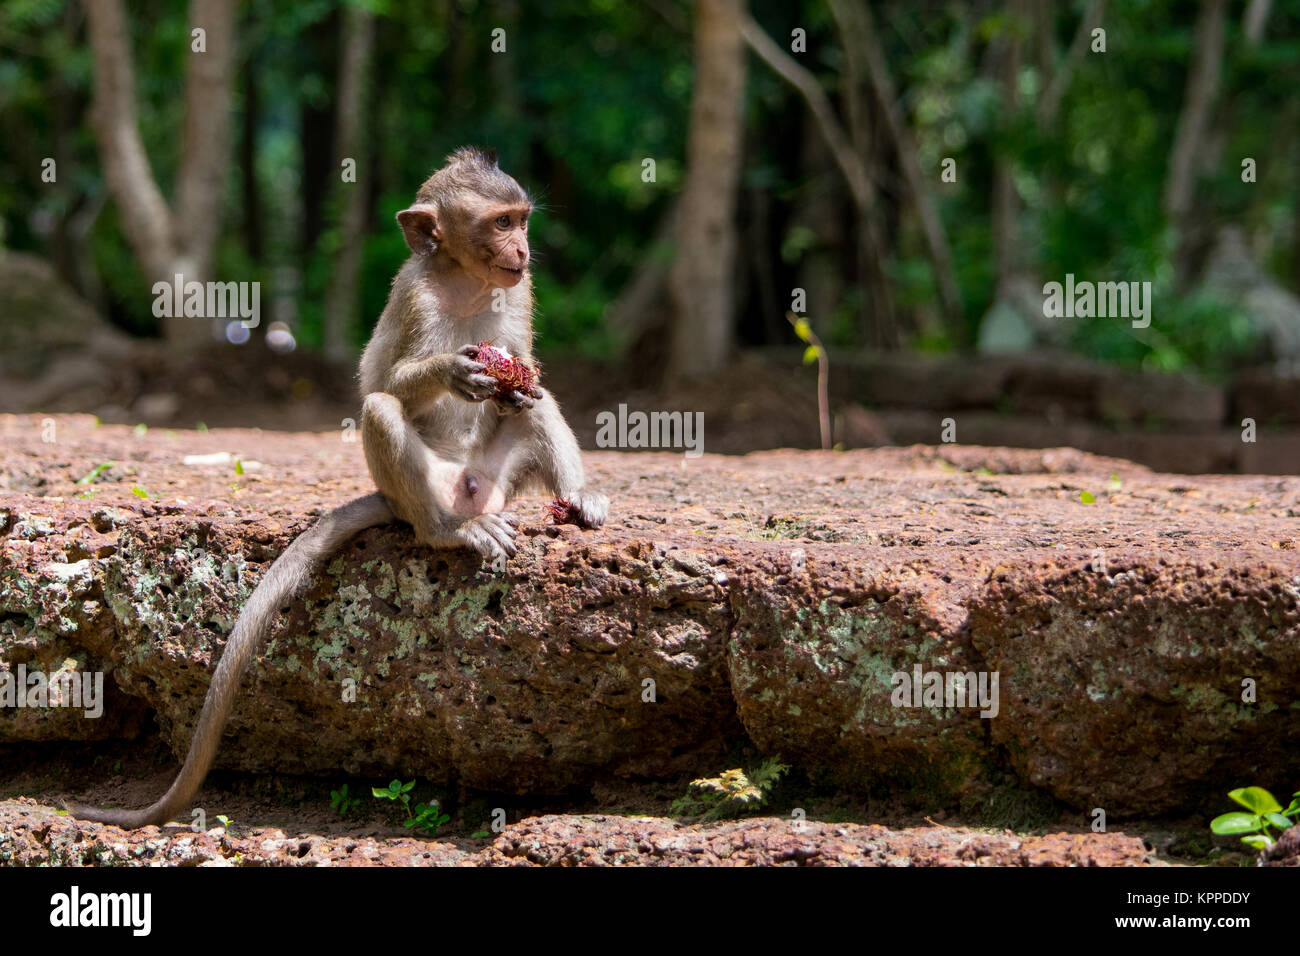 Un giovane, piccole, bambino affamato scimmia macaco mangiare e sgranocchiando una frutta rossa mentre seduto su una parete, in Cambogia, Sud Est asiatico Foto Stock